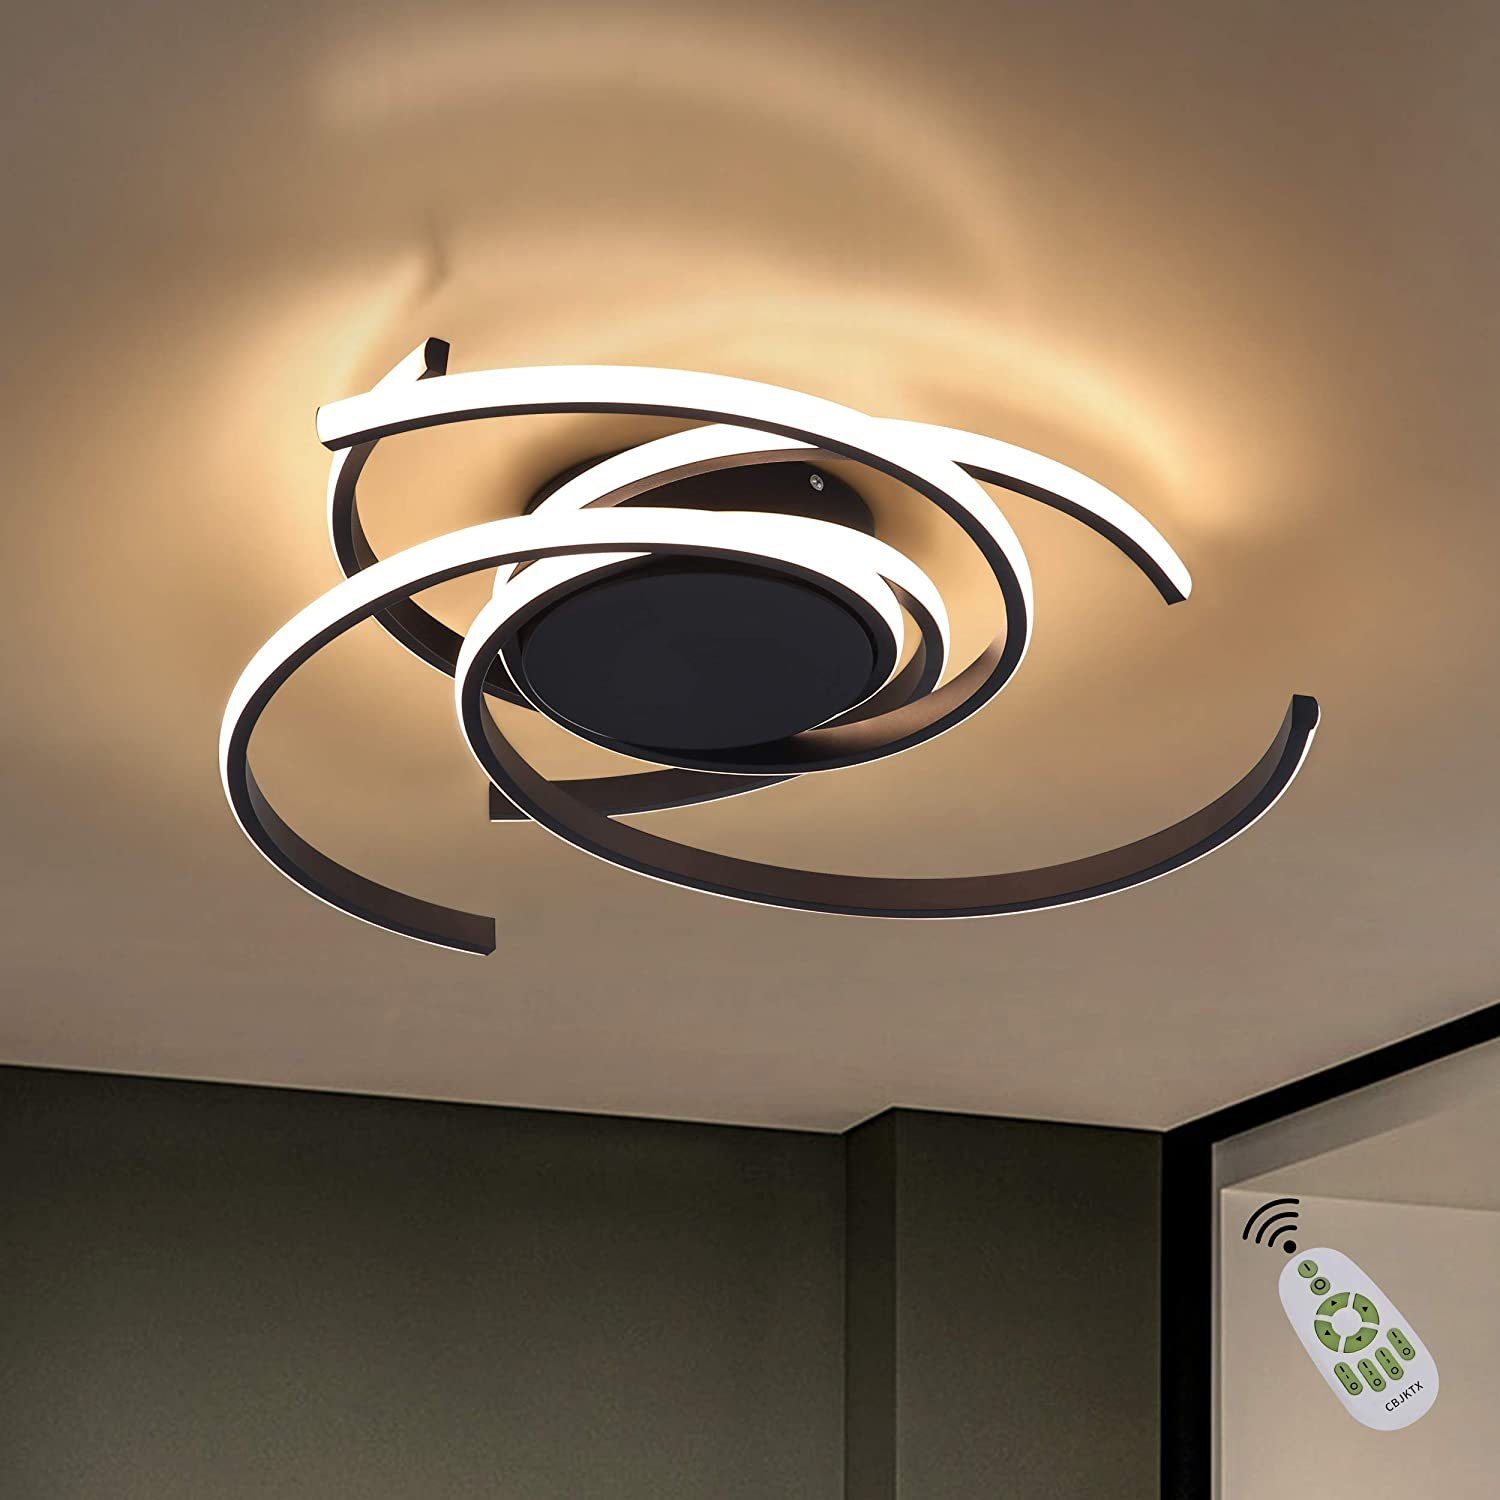 Design LED Deckenlampe Deckenleuchte Lampe Leuchte Jugendzimmer Beleuchtung 